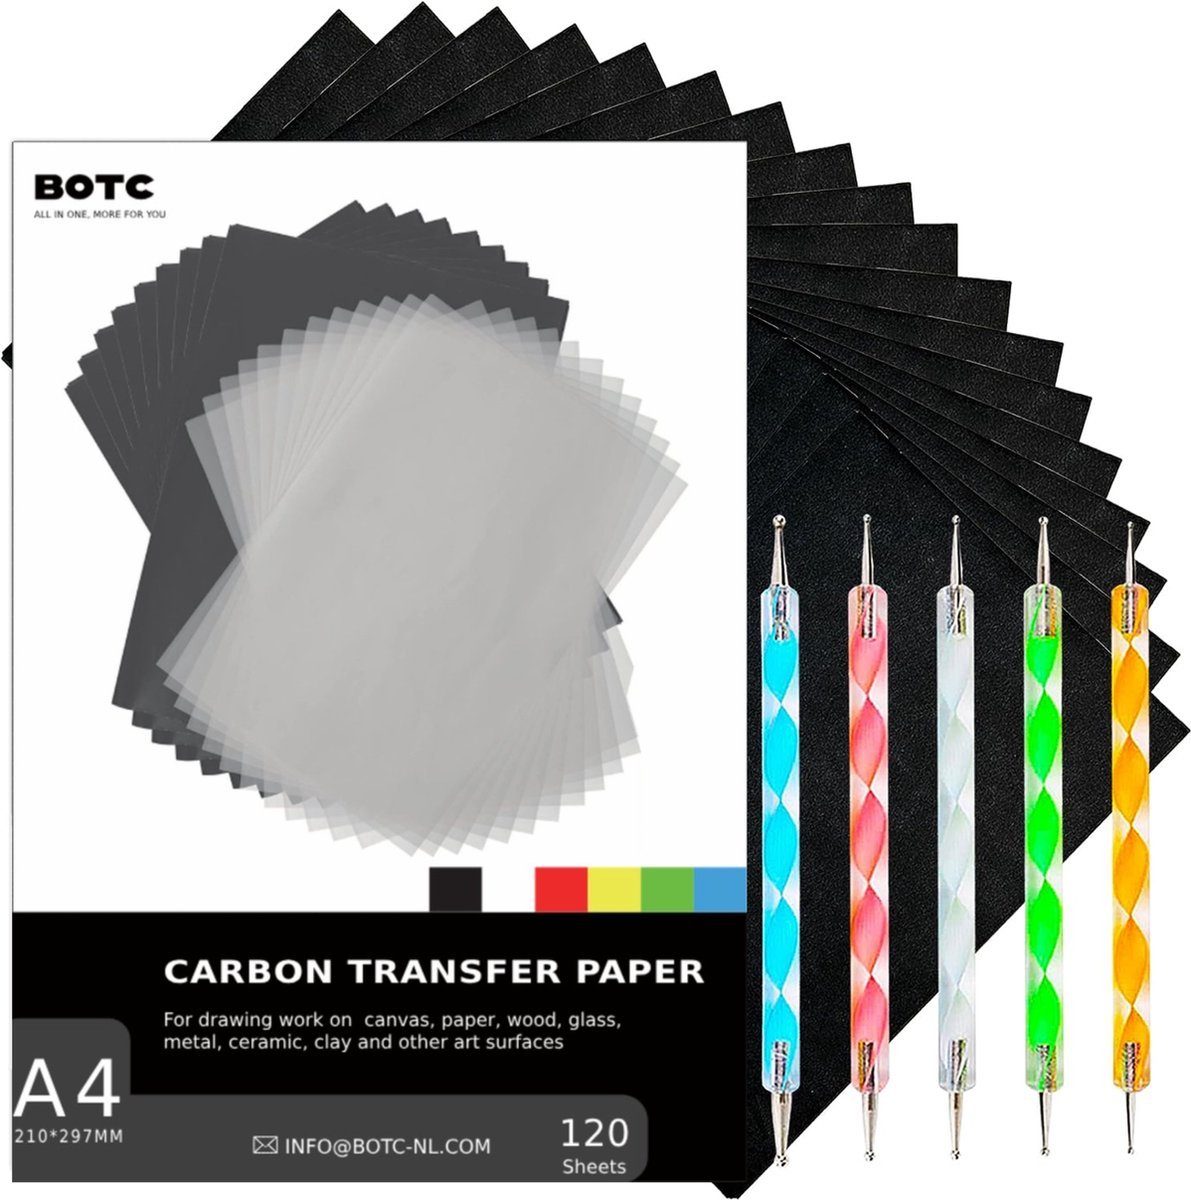 Carbon-Transferpapier BOTC mit 120 5 5 A4 Schablonen, Stück - + Pausstiften - Prägestifte - Blatt Plotterpapier 120 Schwarz Kohlepapier